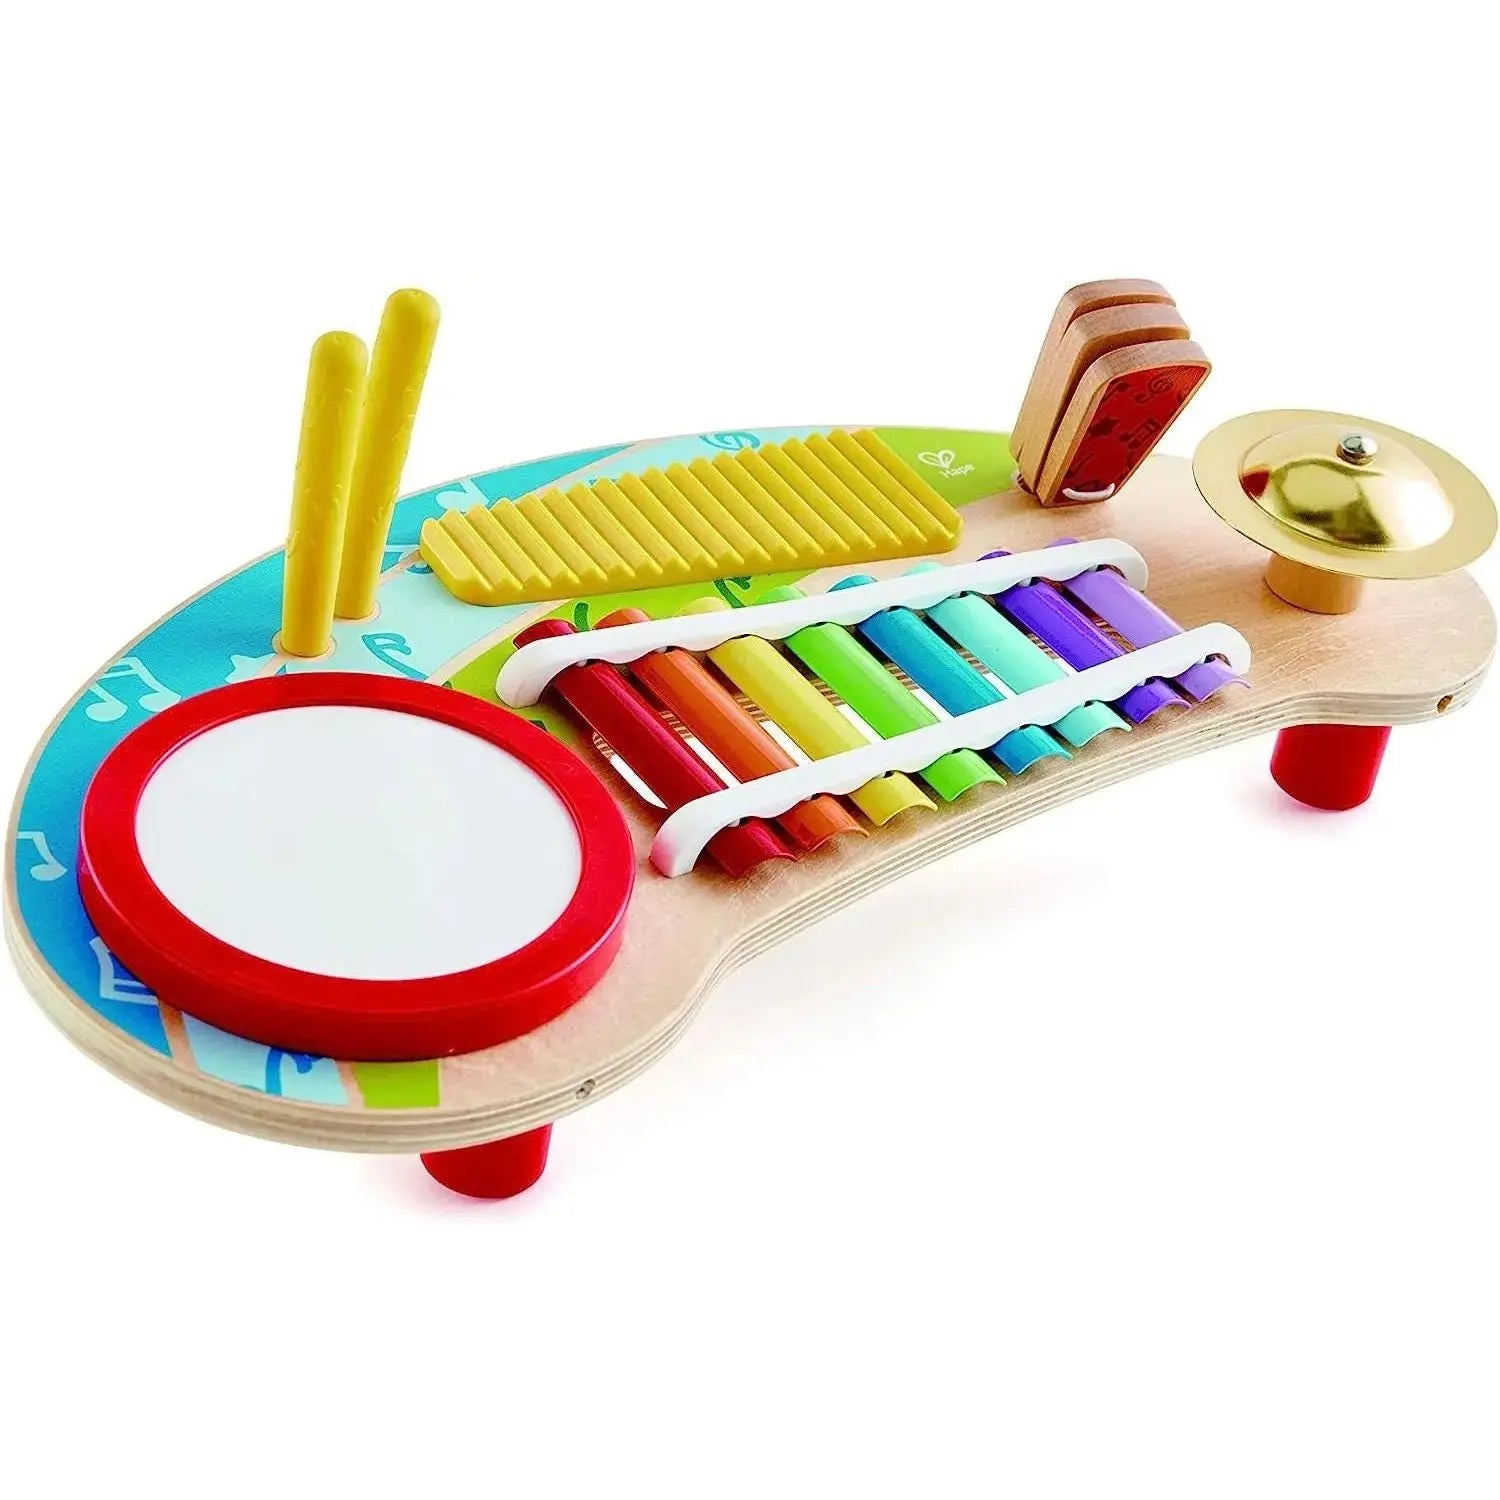 Ensemble de percussions bébé - Instrument de musique - Hape Toys